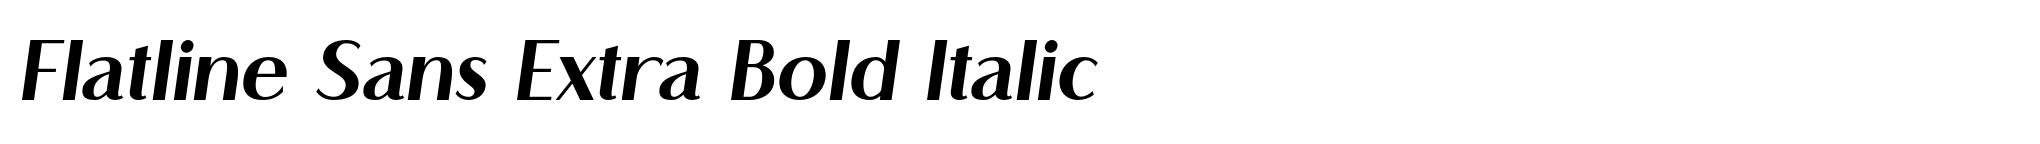 Flatline Sans Extra Bold Italic image